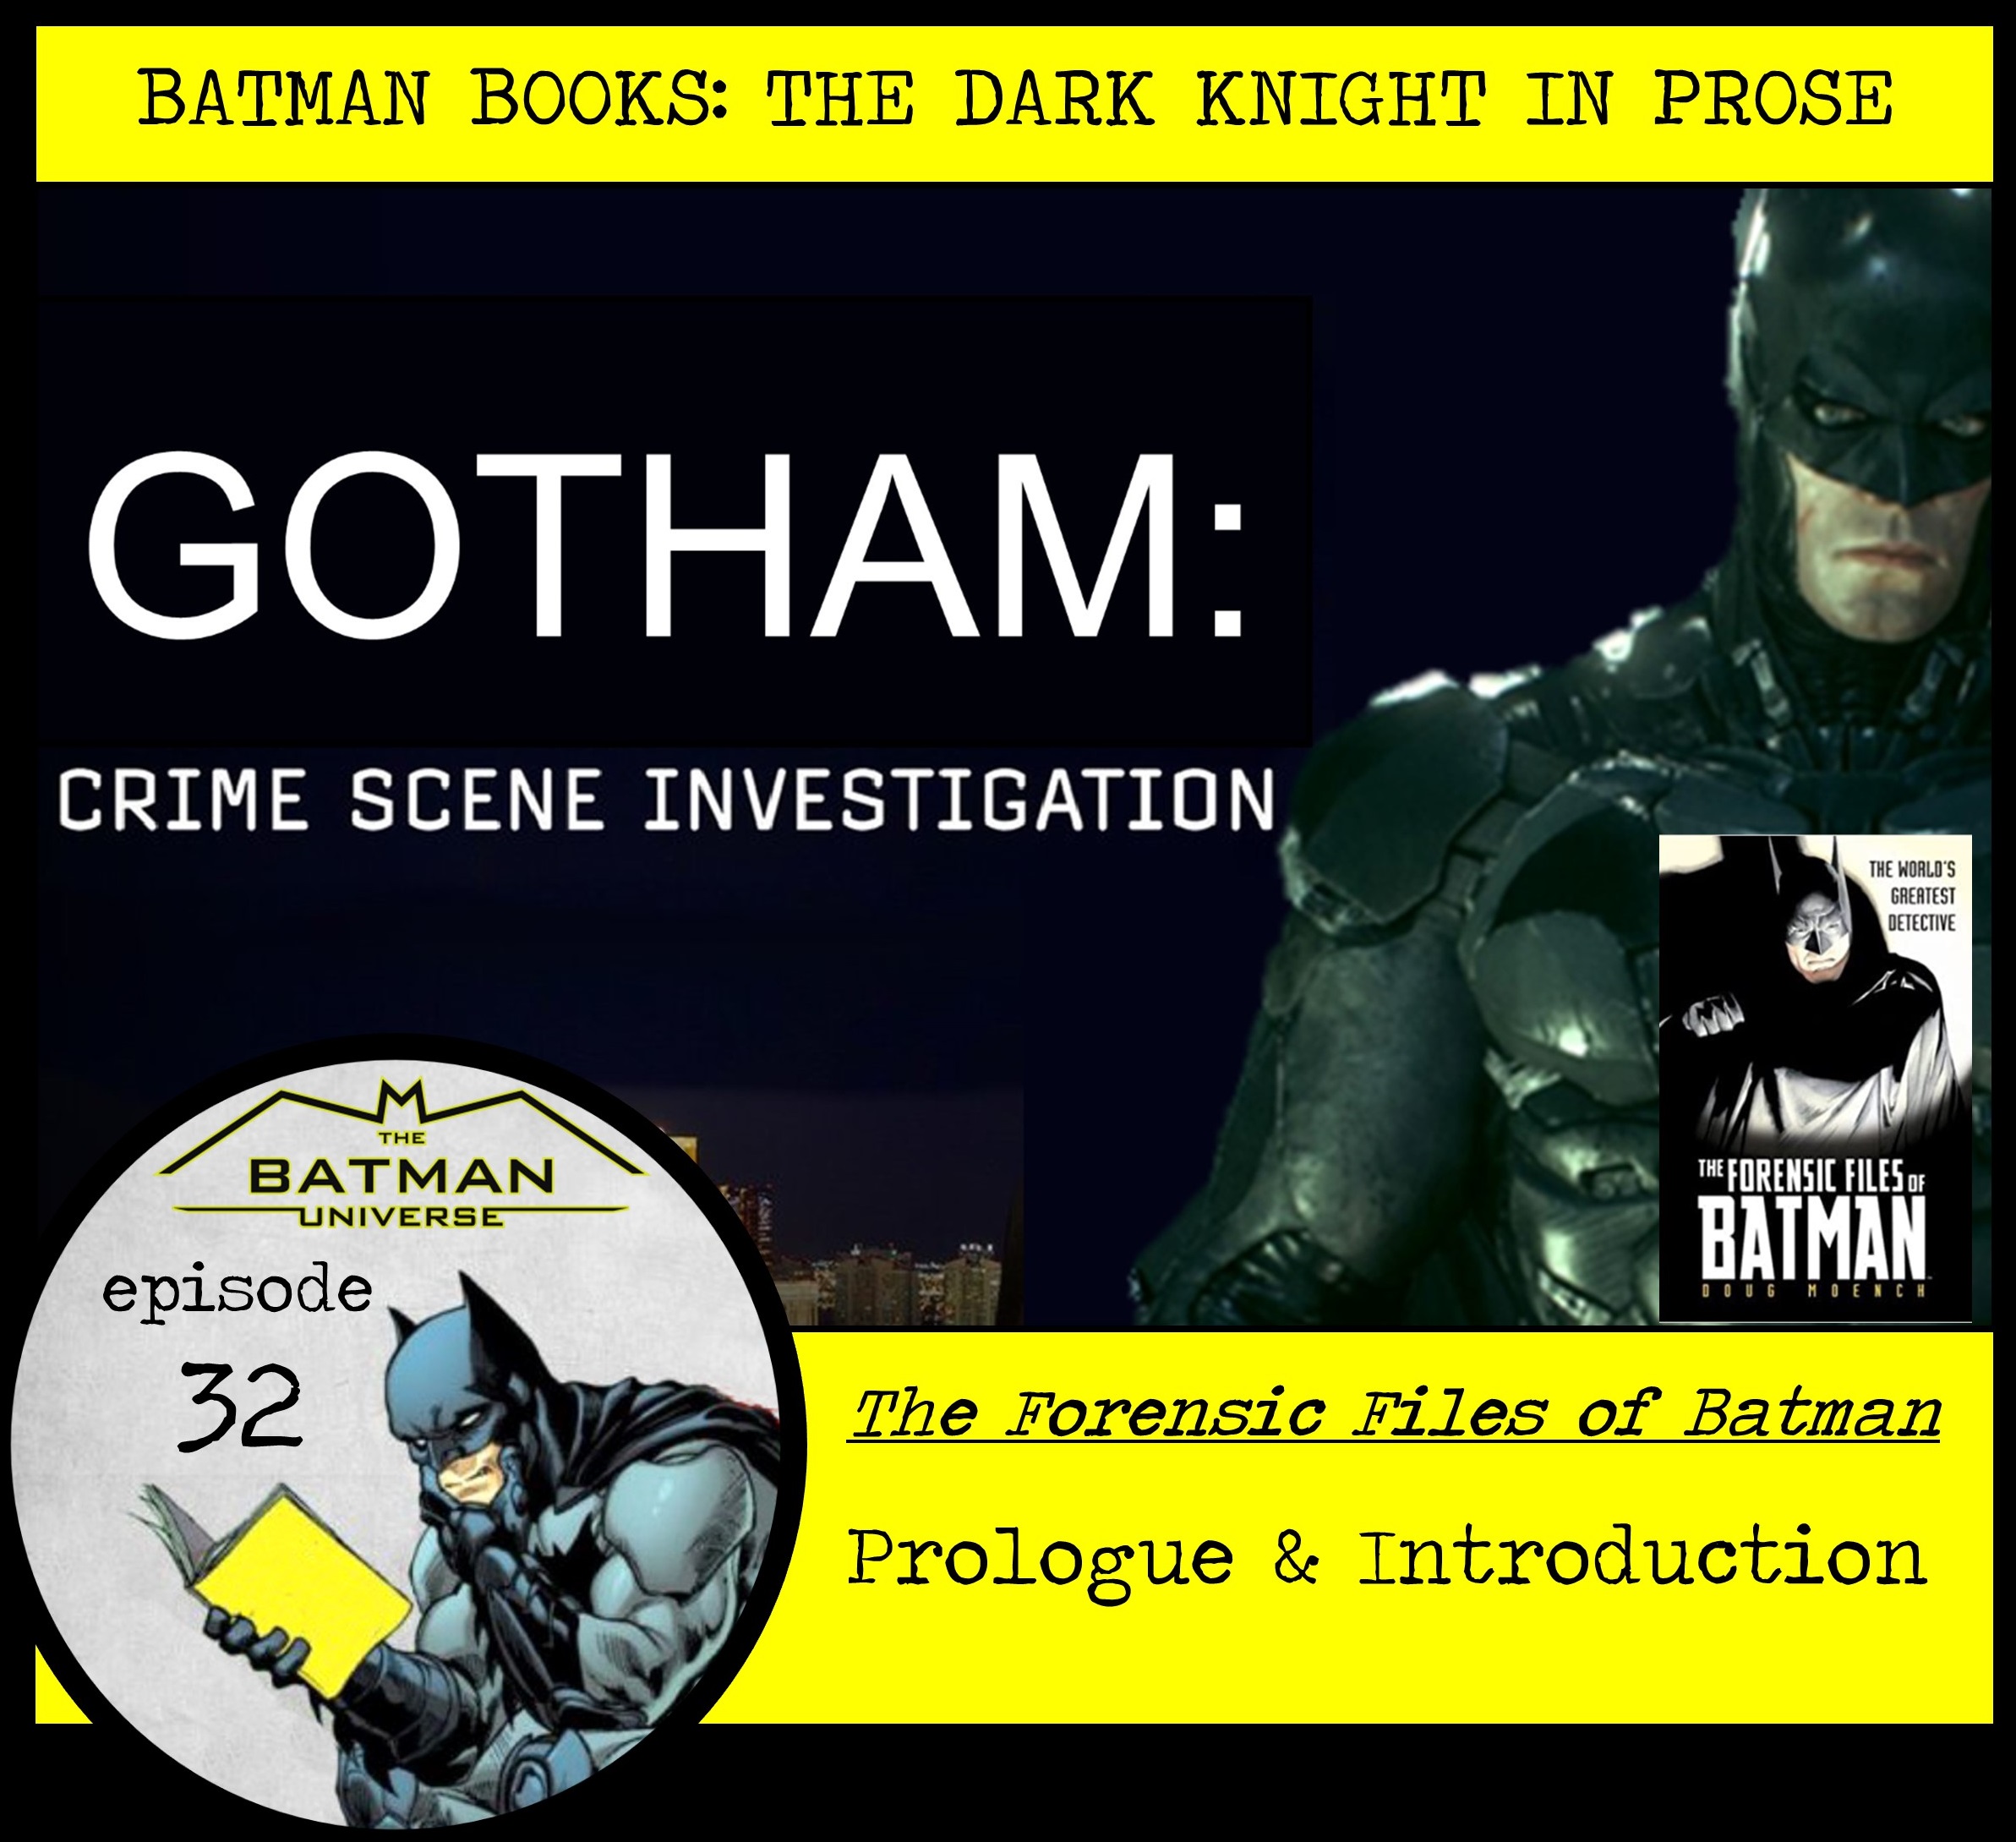 Batman Books: The Dark Knight in Prose Episode 32